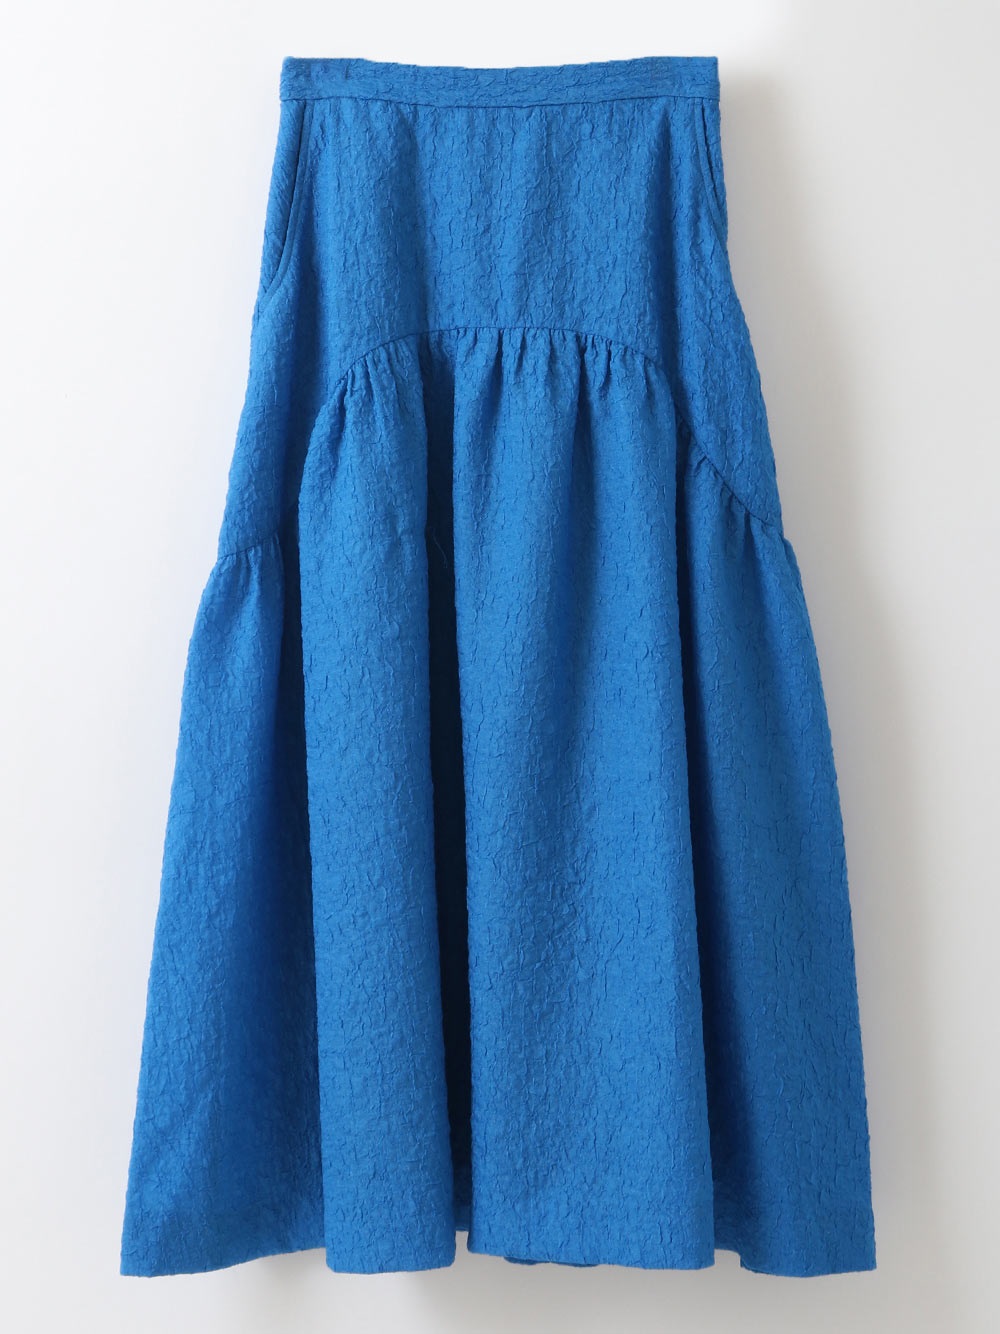 Jacquard Skirt(71ブルー-フリー)